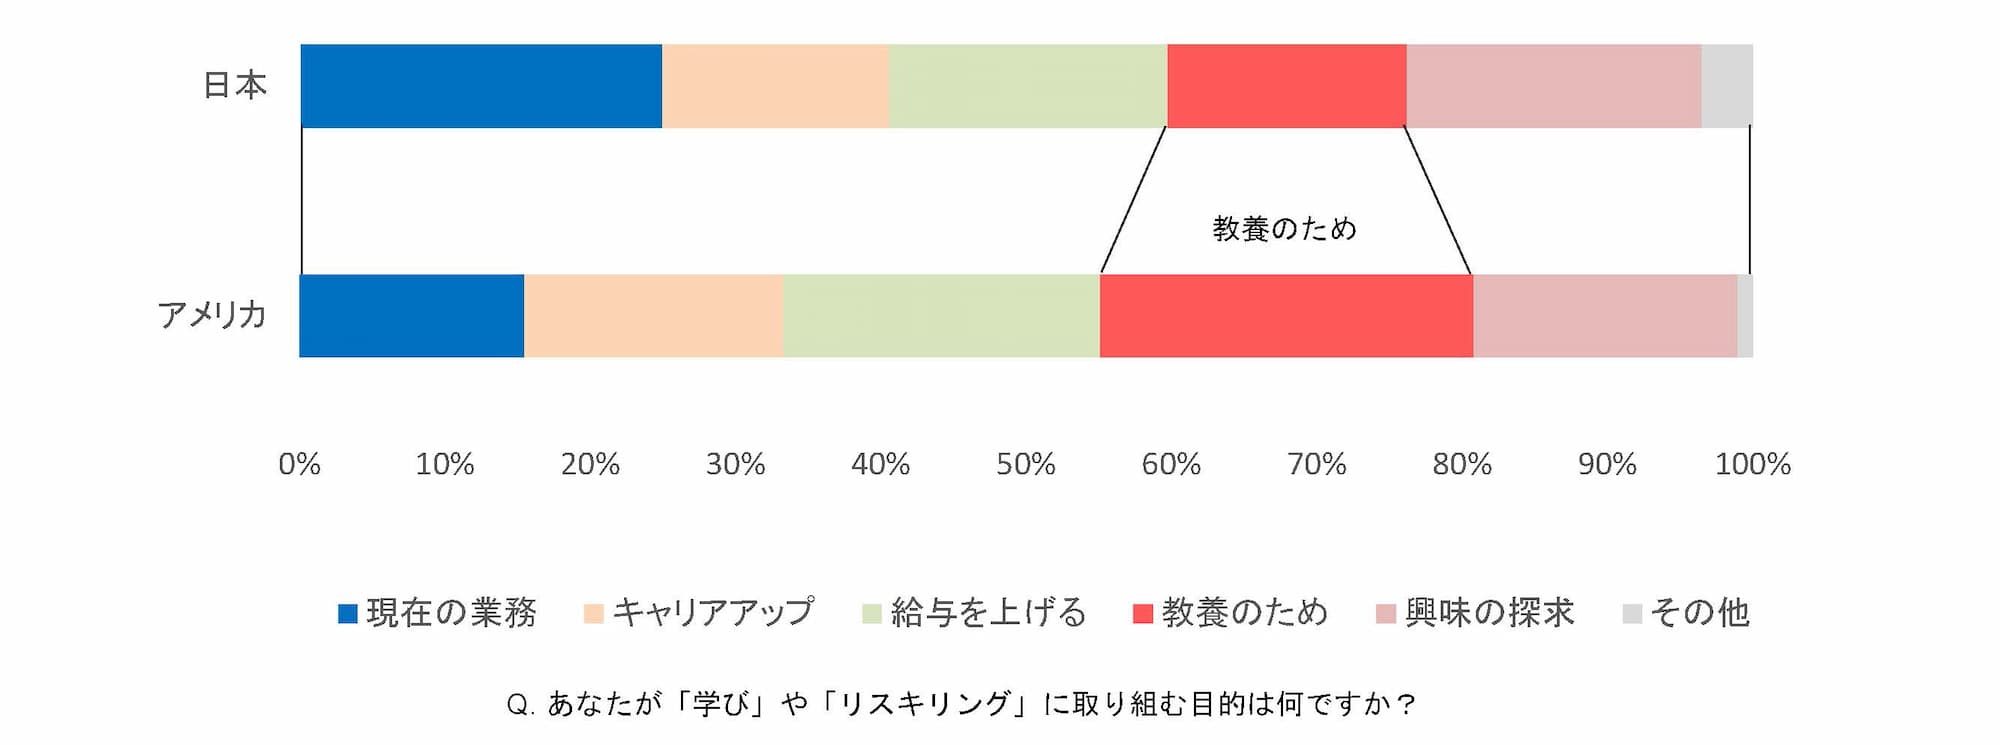 「学び」や「リスキリング」に取り組む目的について日米を比較した図。日本では「現在の業務のため」が多く、アメリカでは「教養のため」が多い